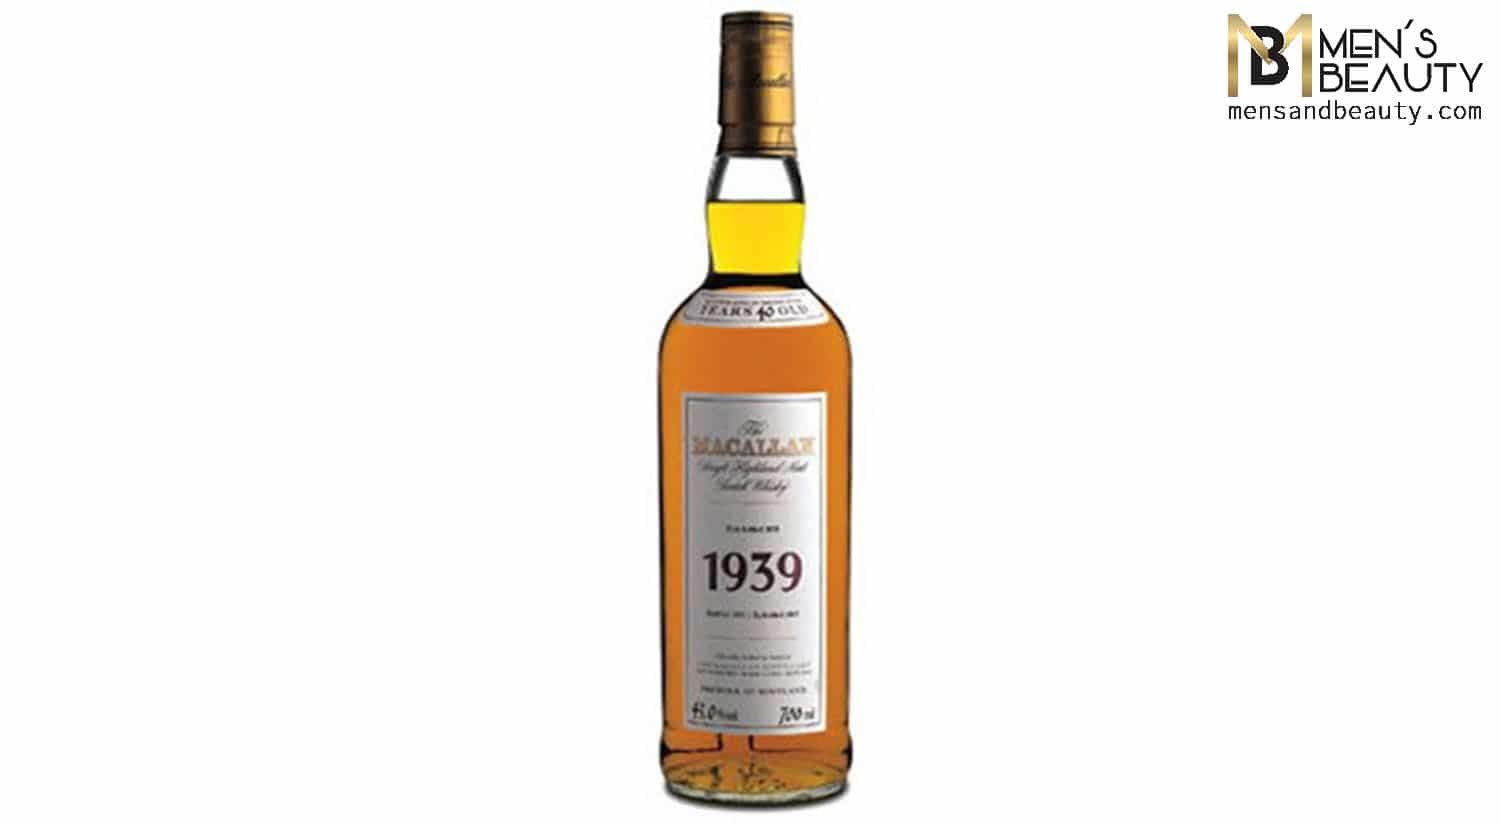 whisky mas caro del mundo macallan 1939